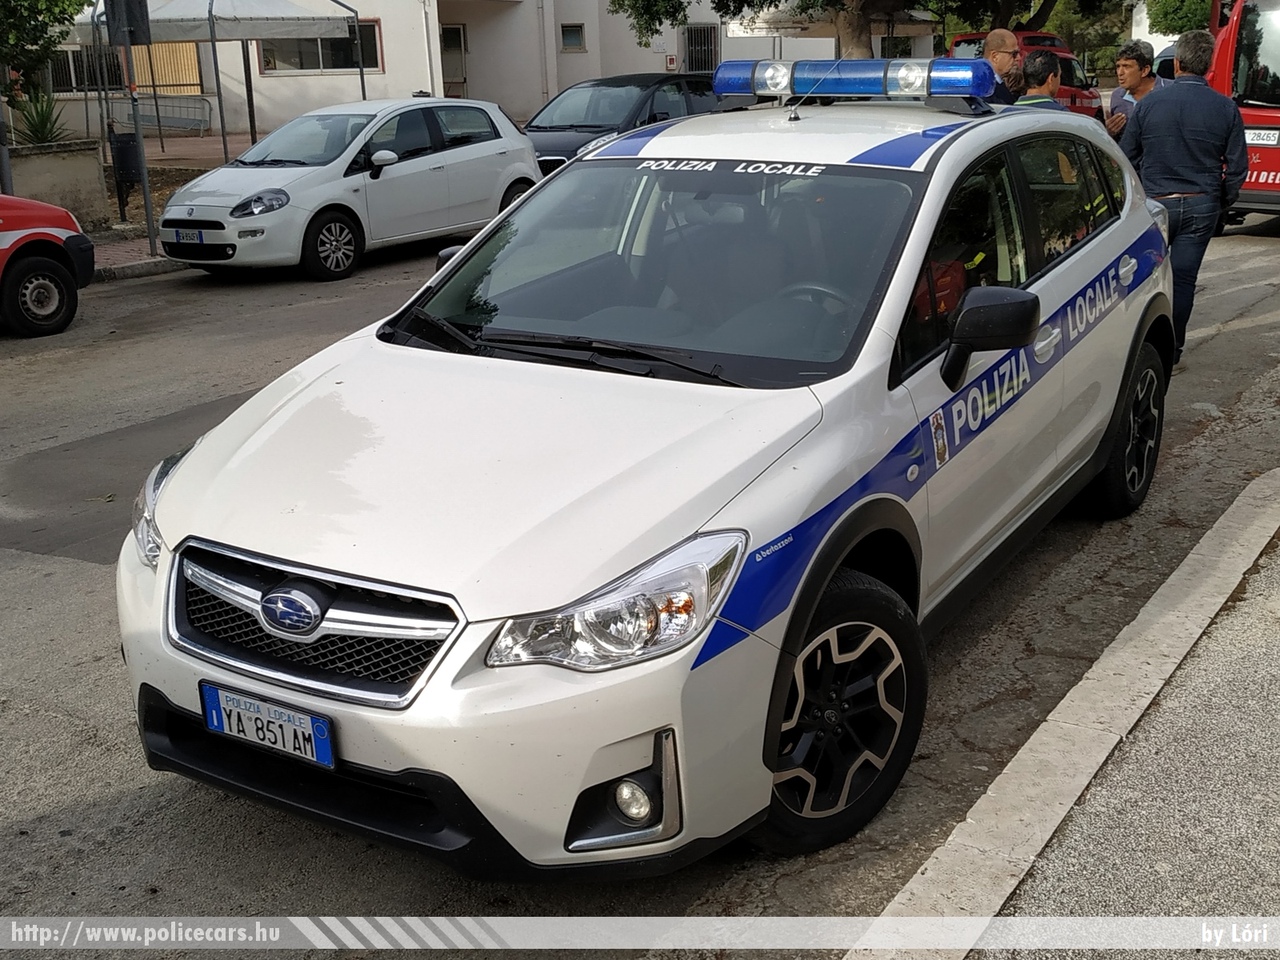 Subaru XV, fotó: Lóri
Keywords: rendőr rendőrautó rendőrség olasz Olaszország police policecar Italy italian